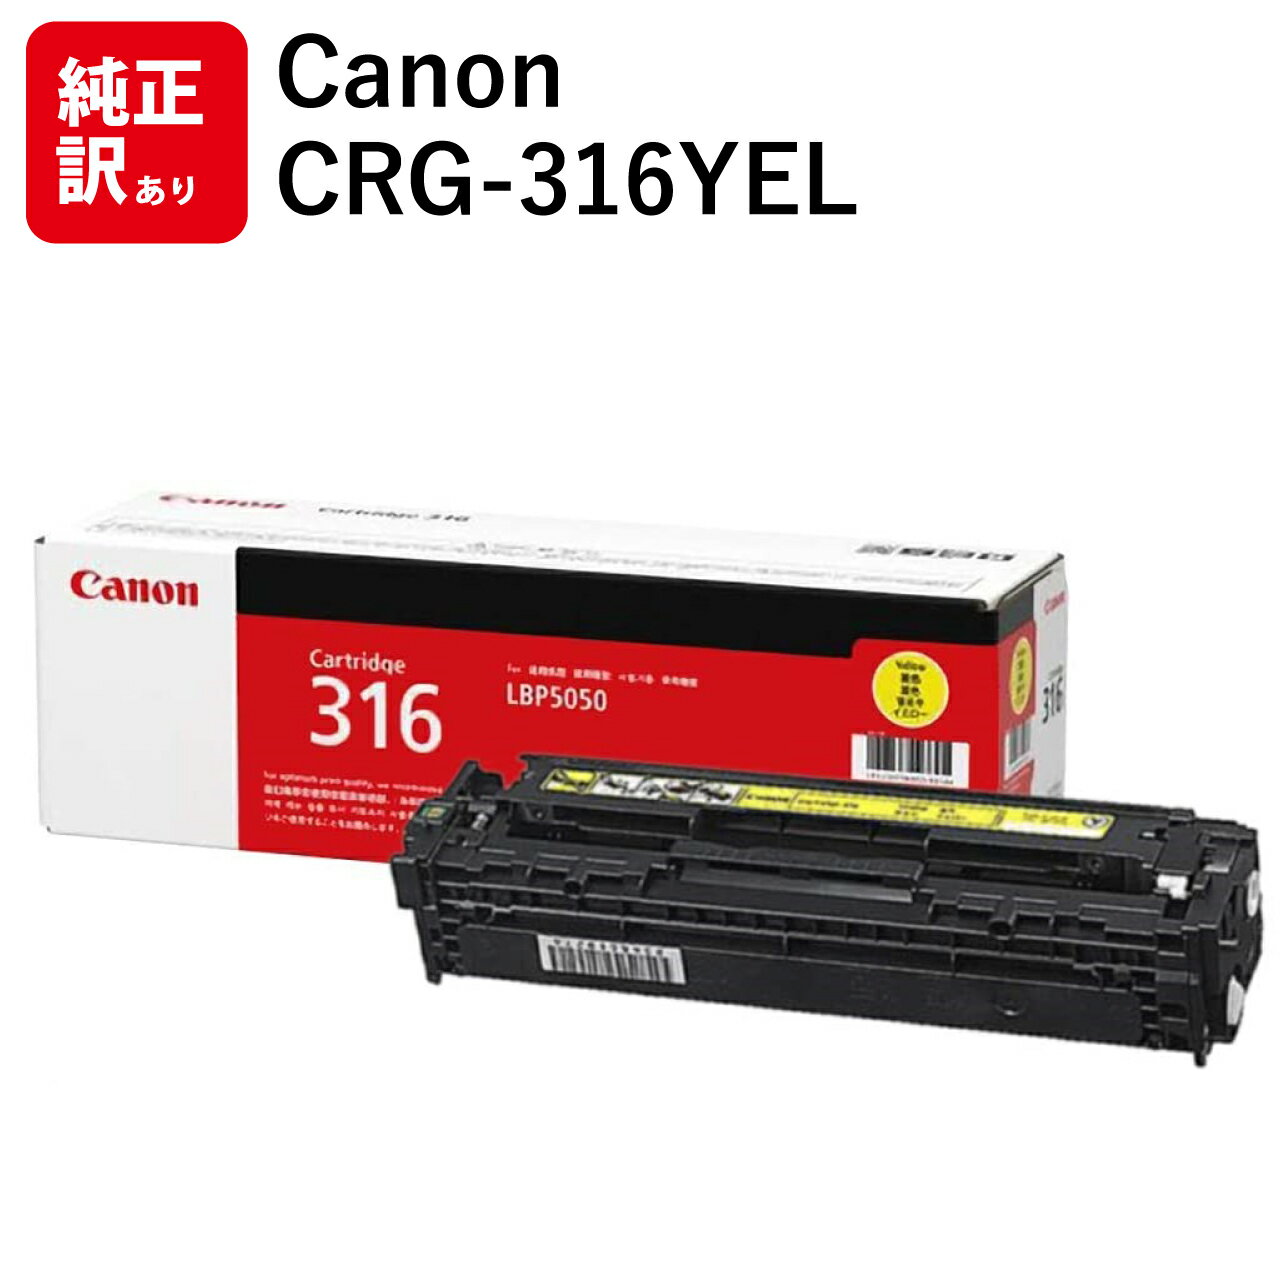 激安商品 業務用3セット Canon キャノン トナーカートリッジ